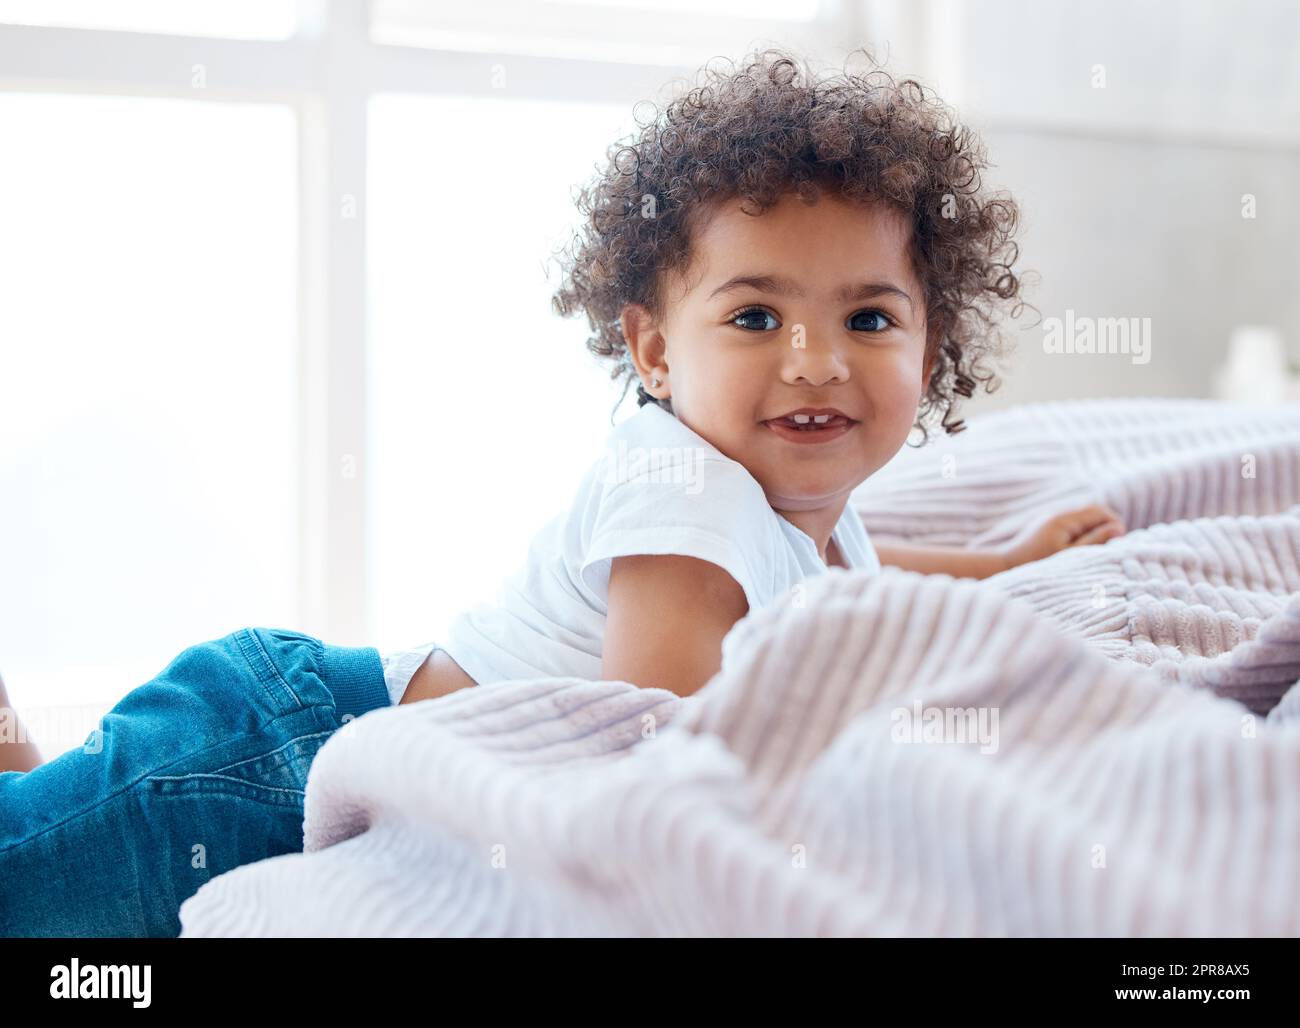 Lockige Niedlichkeitsüberlastung. Aufnahme eines entzückenden kleinen Mädchens auf einem Bett. Stockfoto